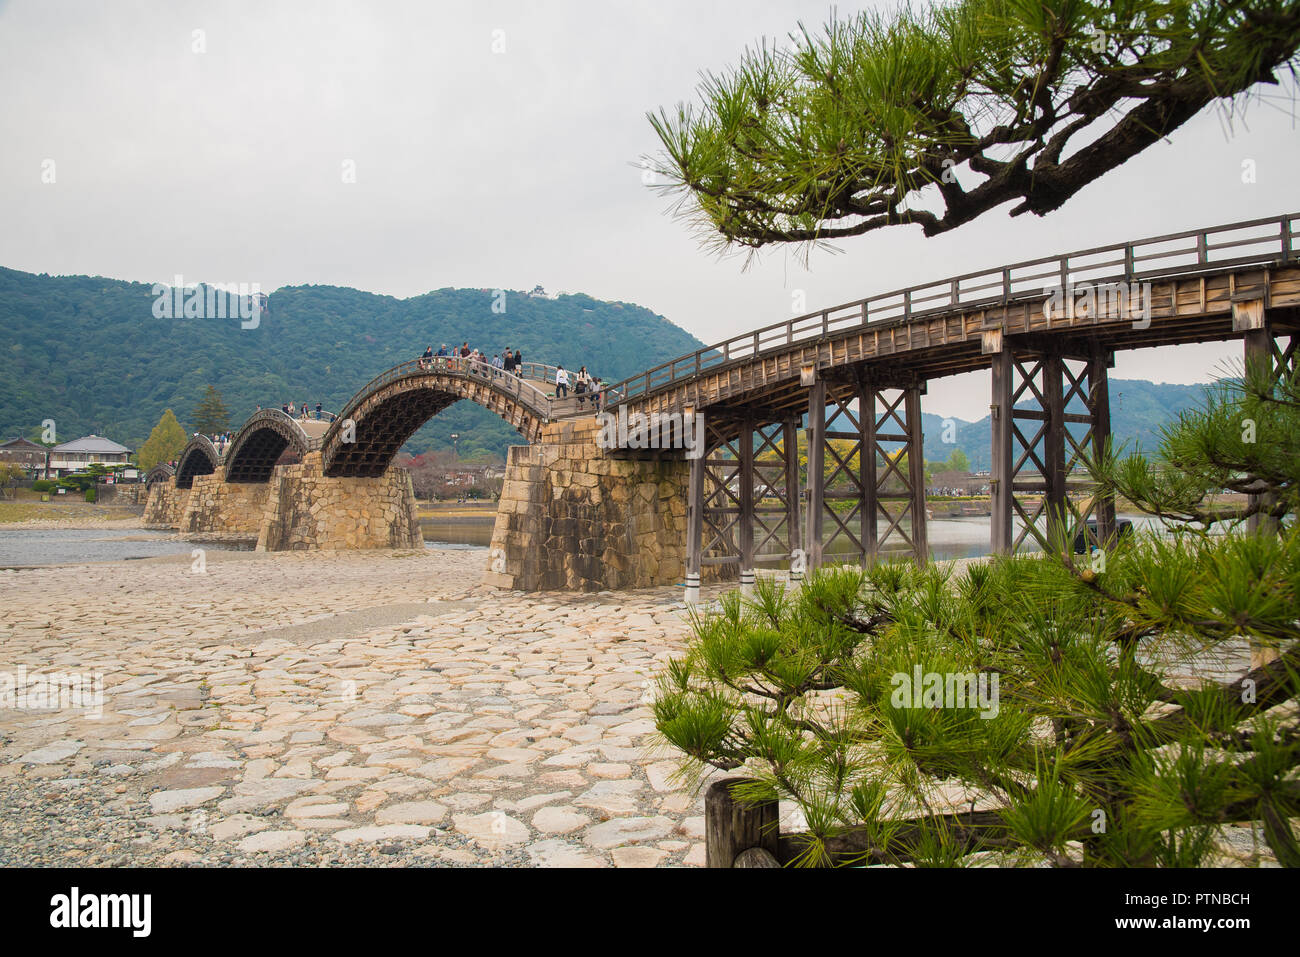 Die kintai Brücke, eine historische hölzerne Bogenbrücke, in der Stadt von Iwakuni, in der Präfektur Yamaguchi, Japan Stockfoto